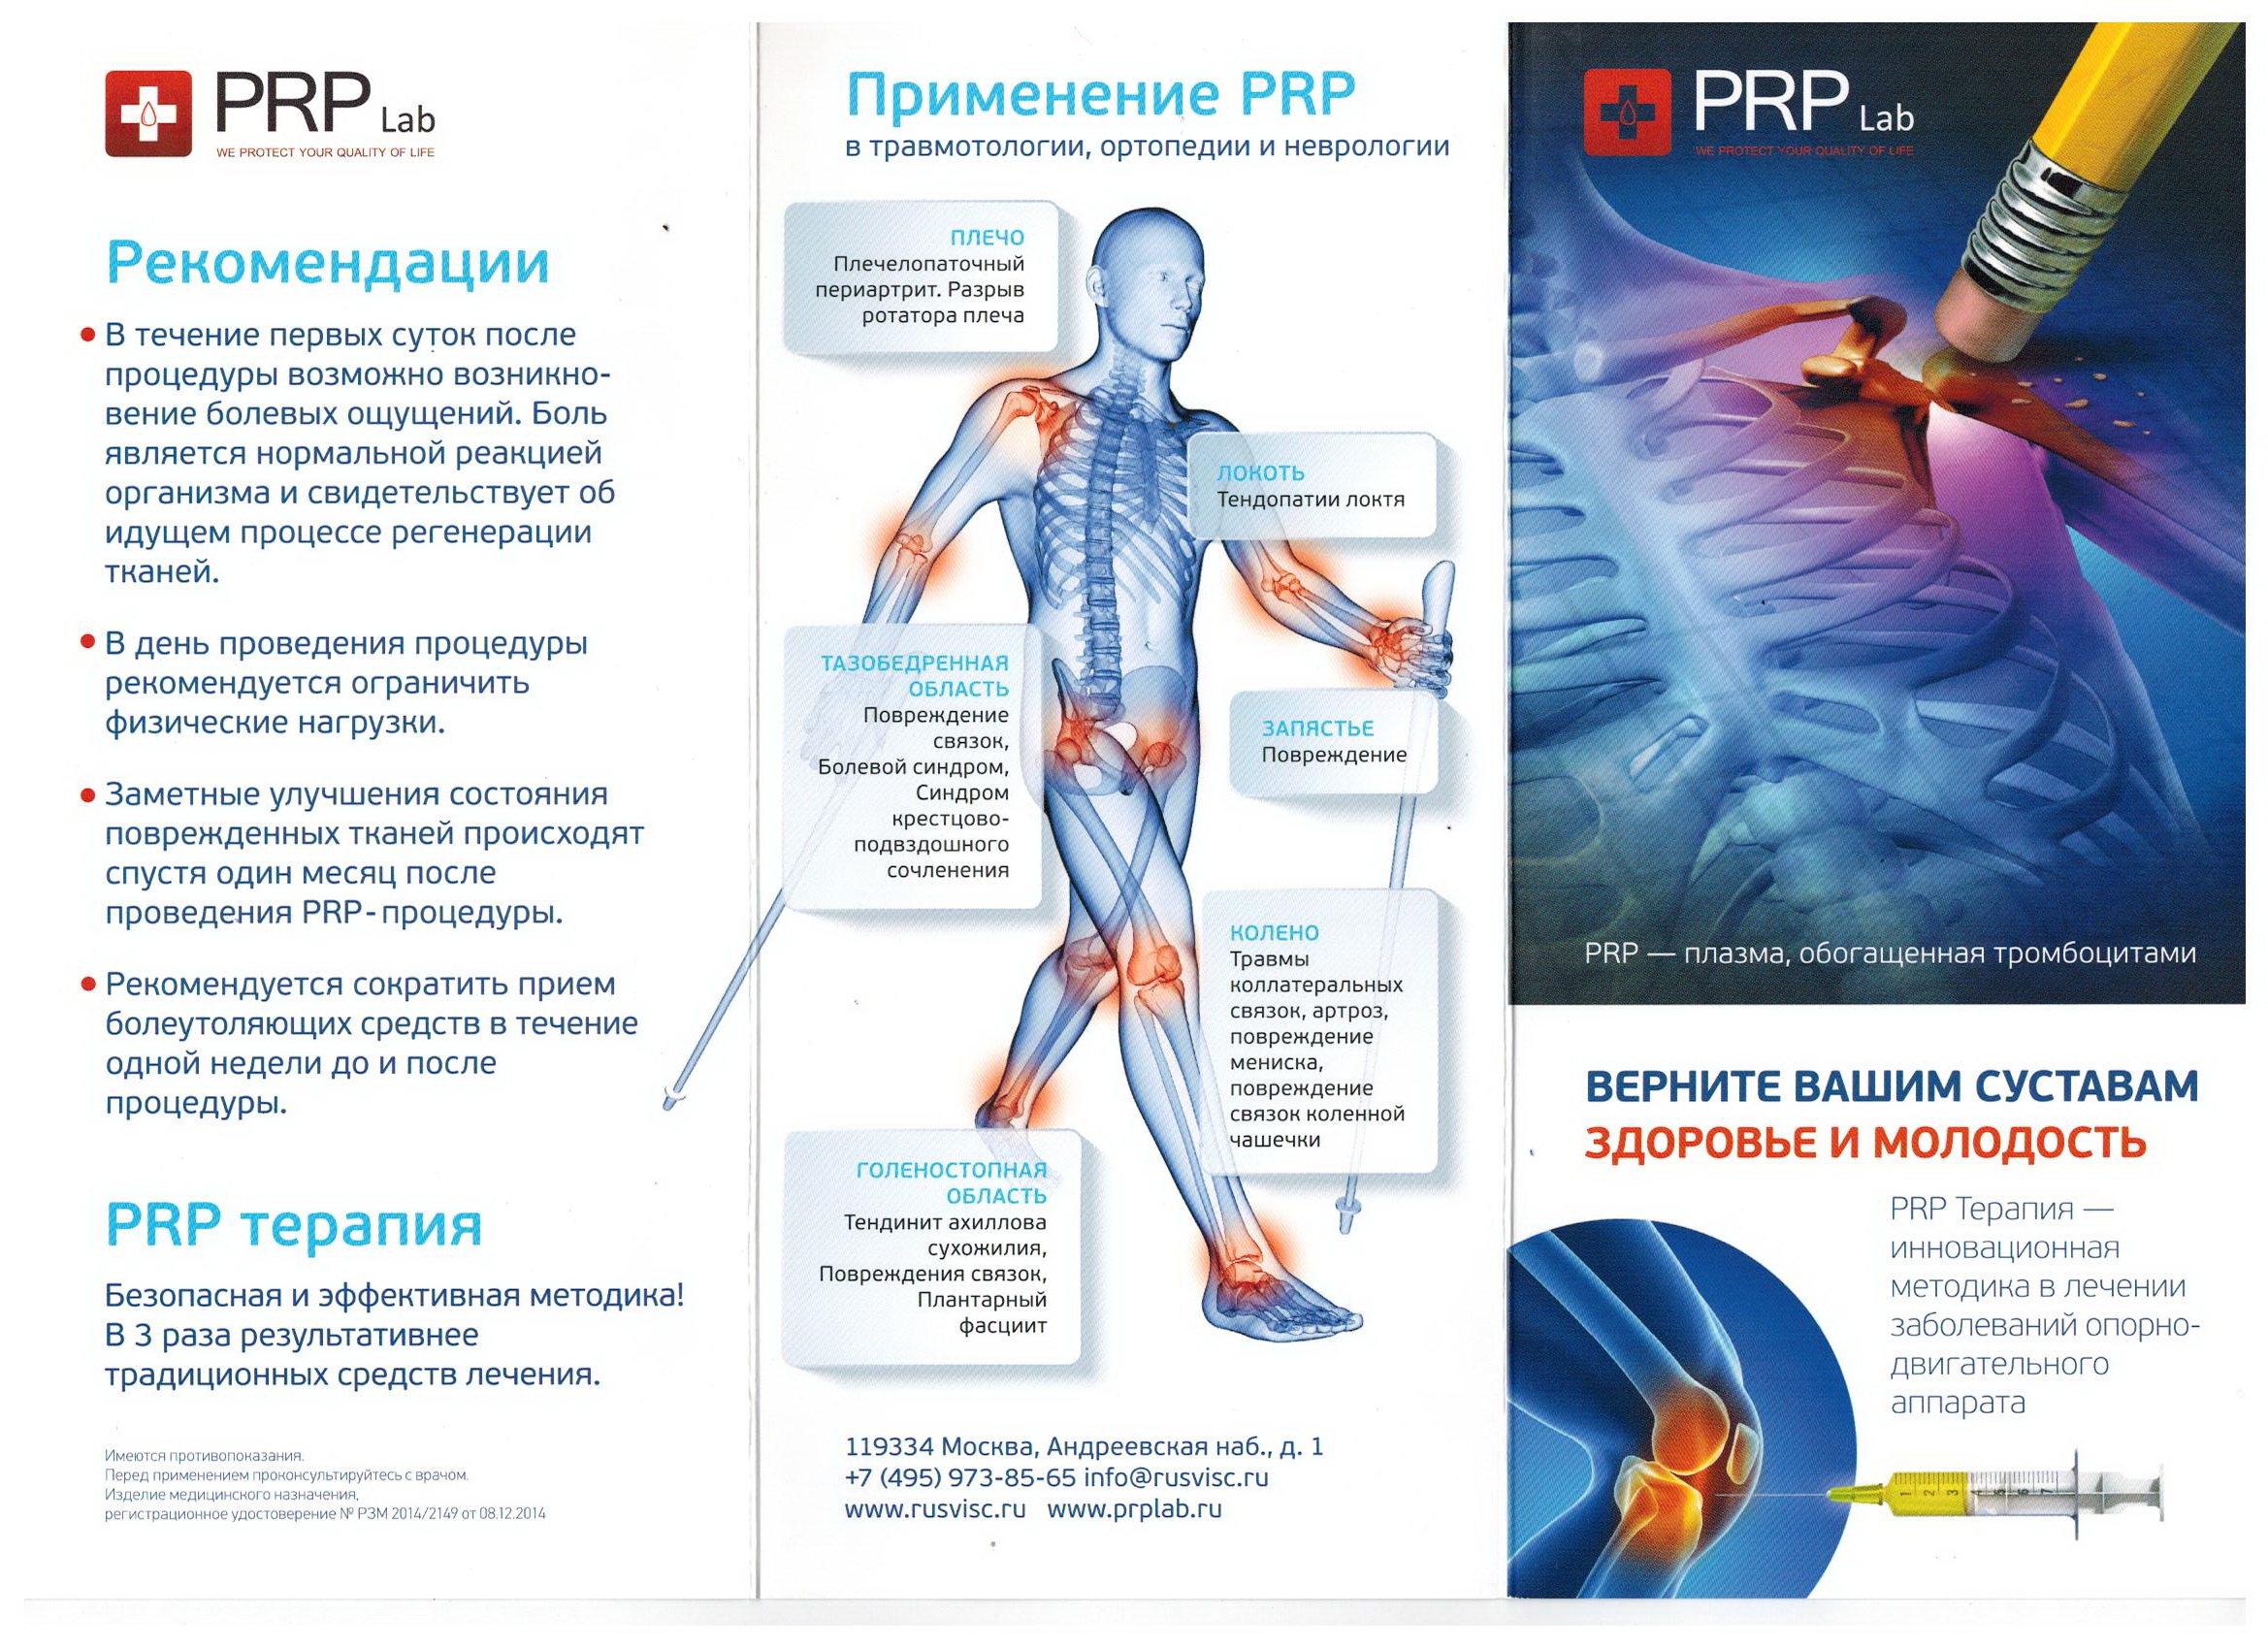 Плазмолифтинг колена отзывы. Плазмолифтинг PRP терапия коленного сустава. PRP терапия плазма в коленный сустав. Плазмотерапия суставов (PRP-терапия, плазмолифтинг). Плазмотерапия плазма коленного сустава.